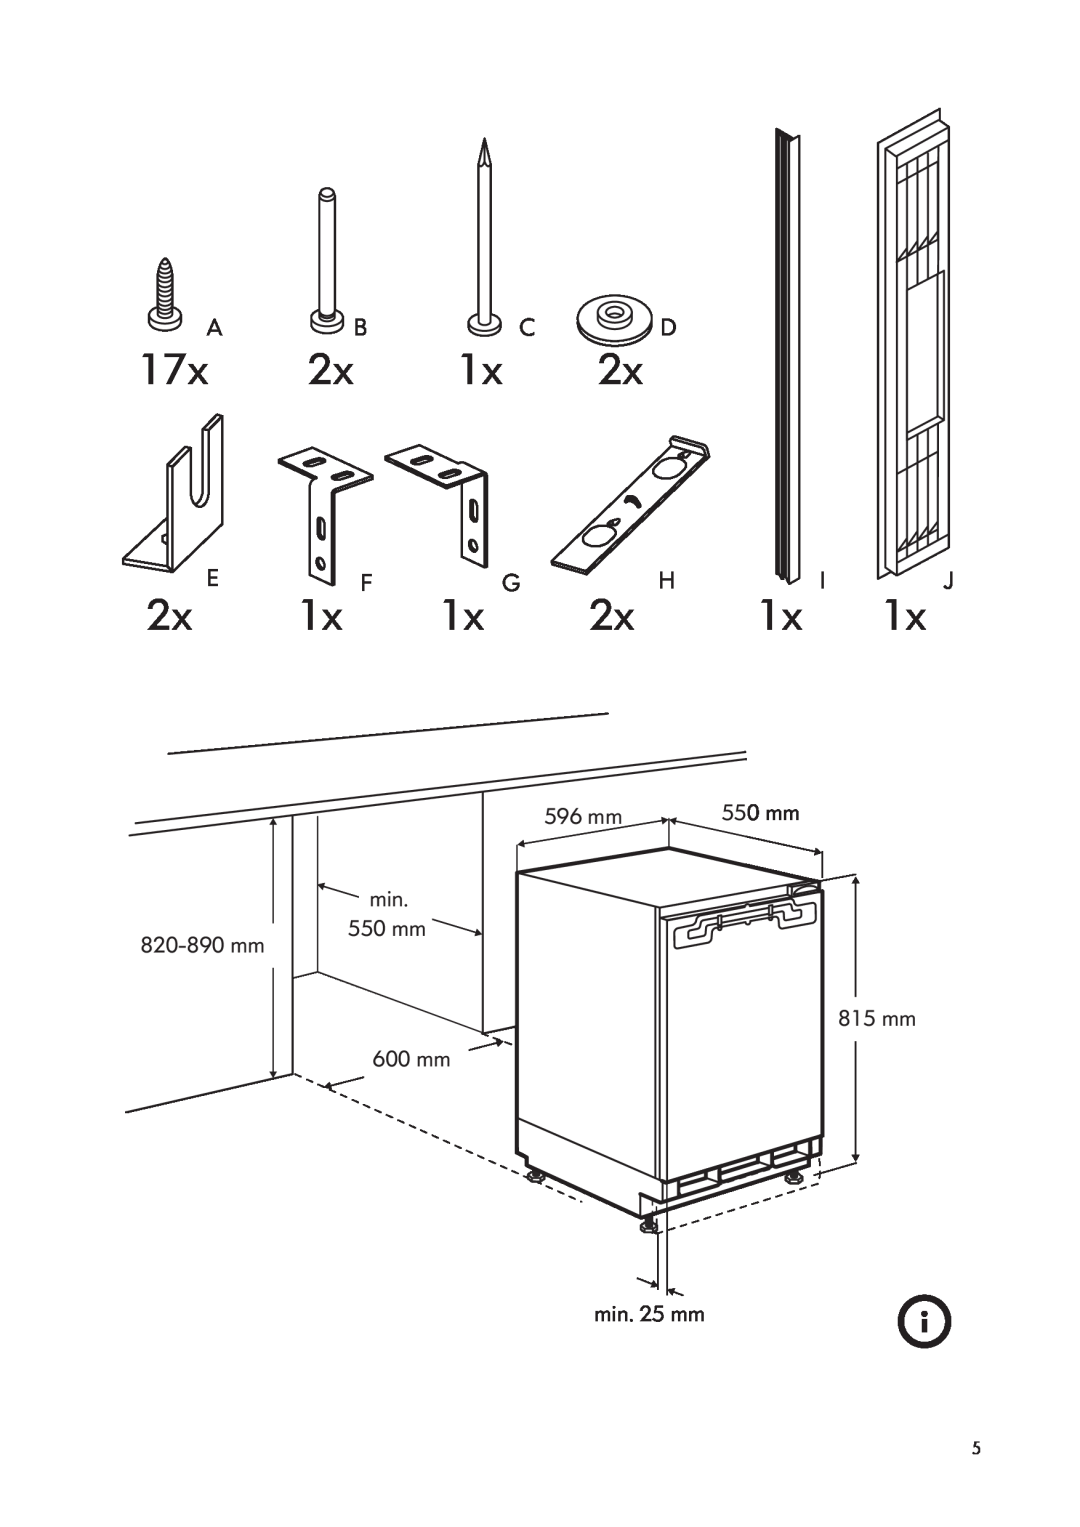 IKEA SF98 manual A Bc D, 17x, 2x E, 1x F, 1x G, 2x H, 1x J 